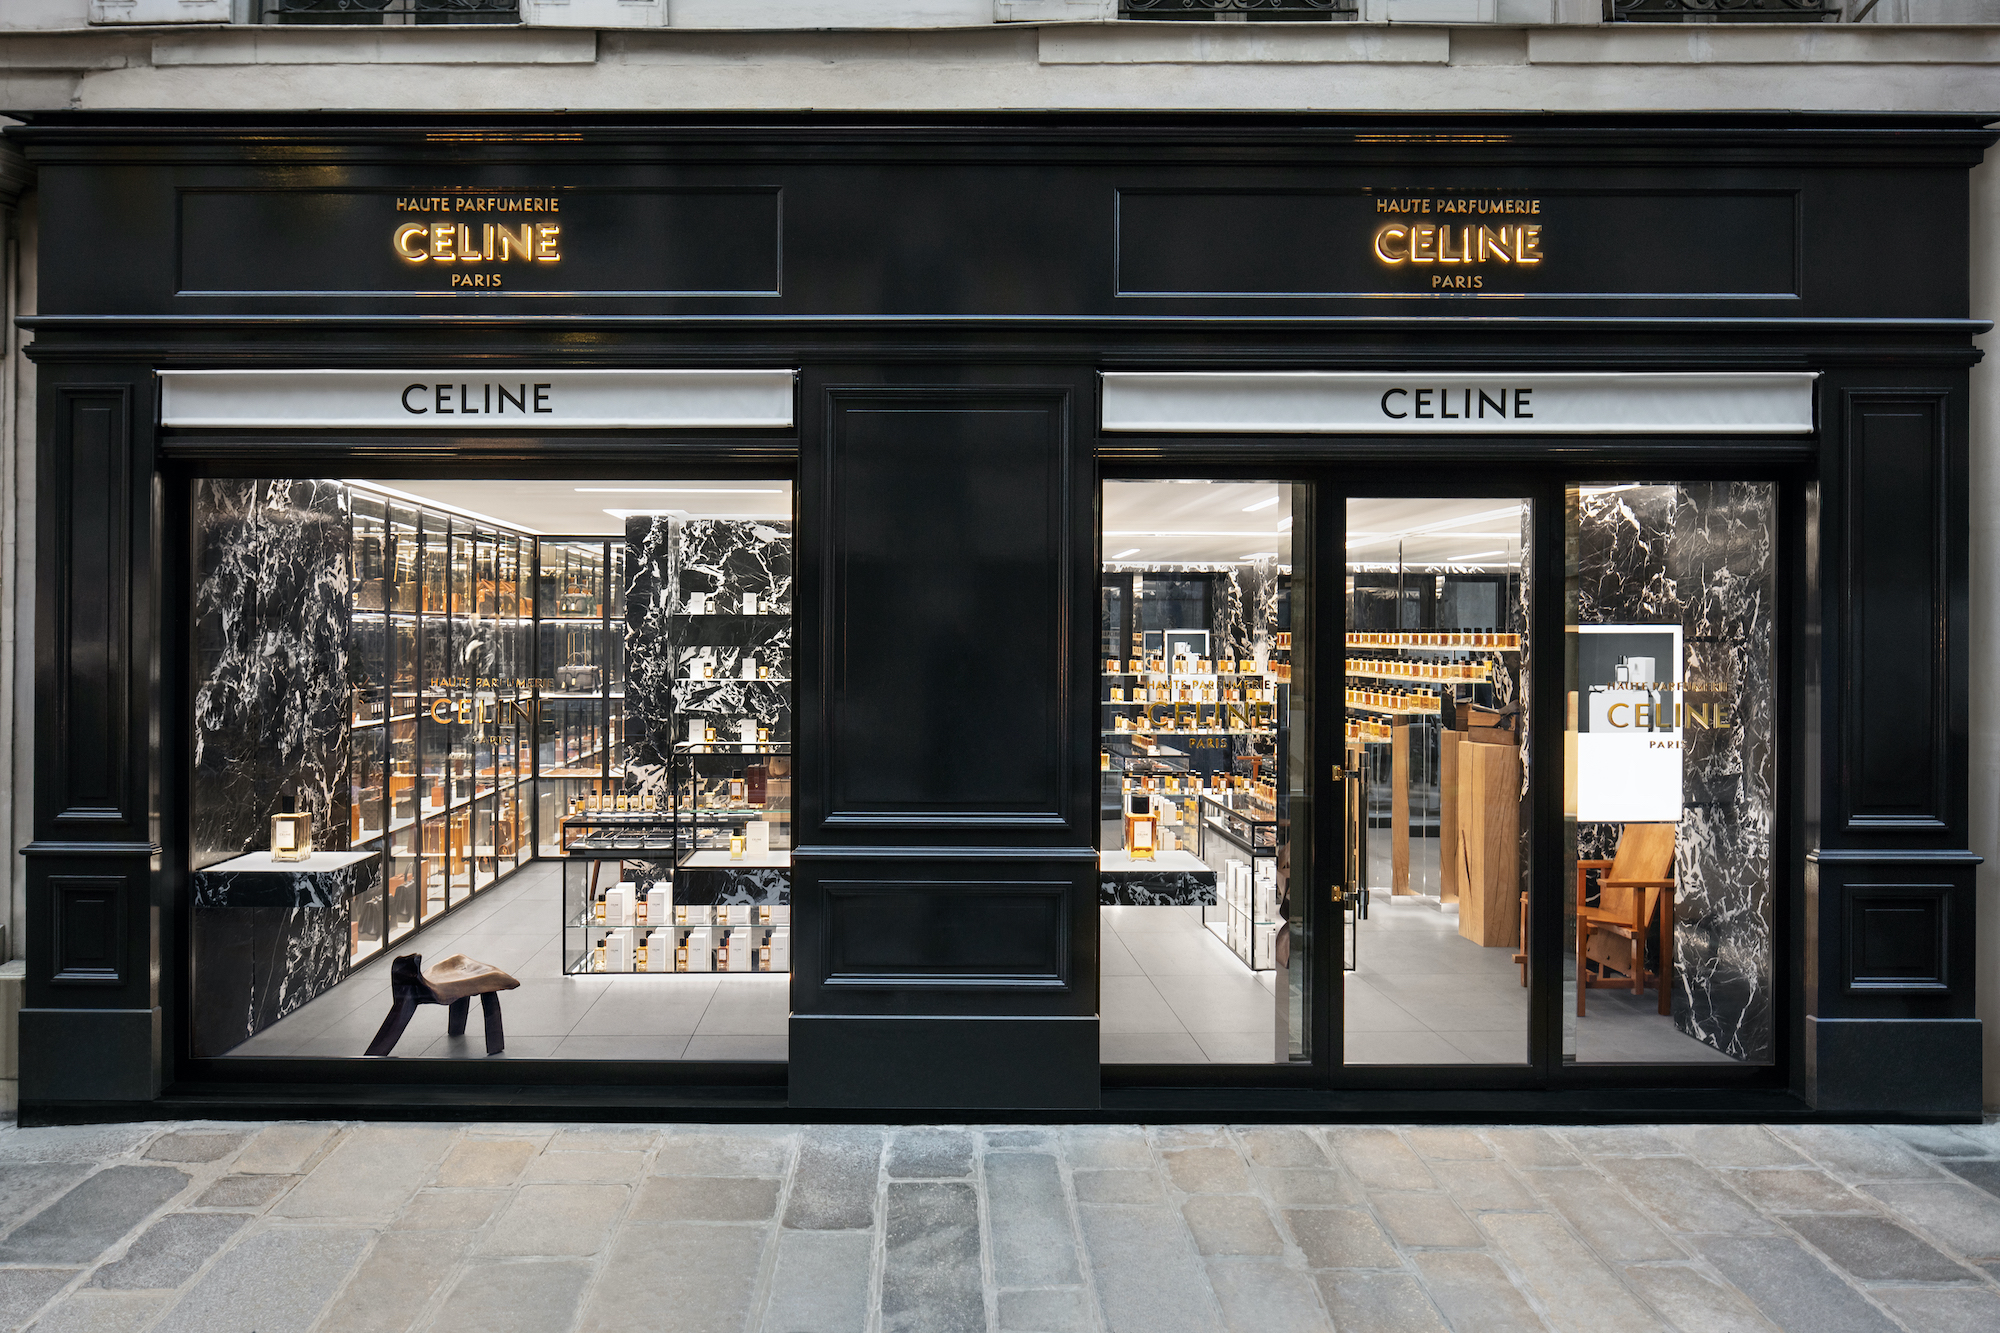  Celine Boutique Parfum storefront.